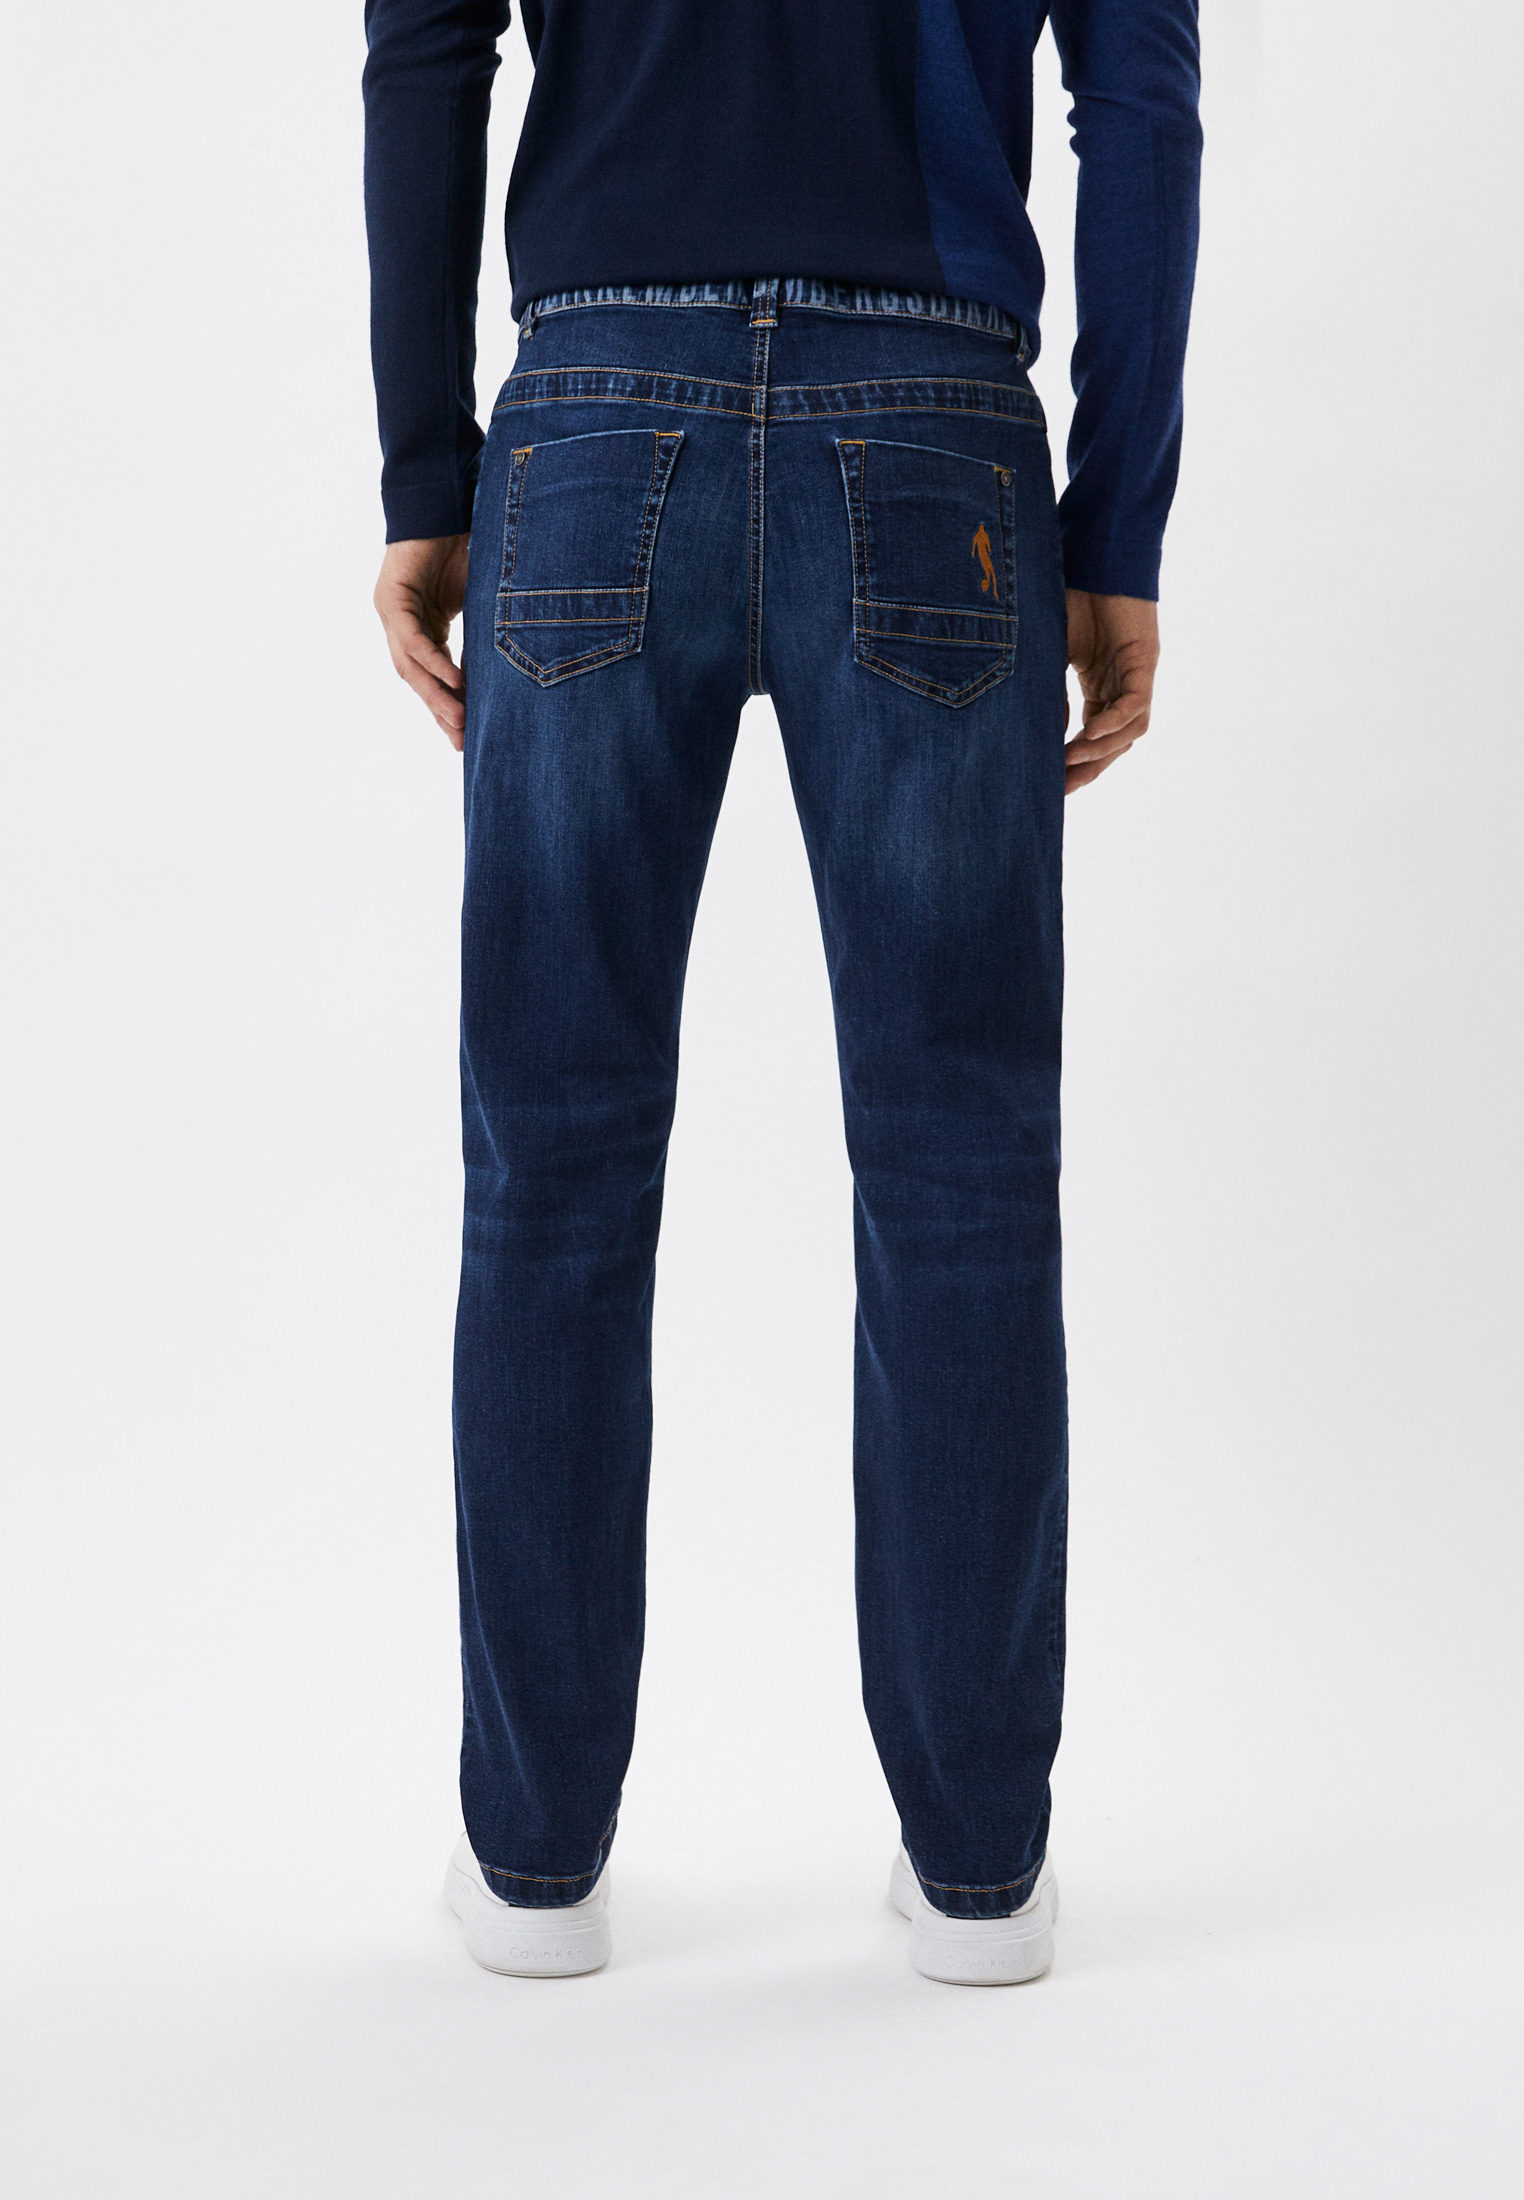 Мужские прямые джинсы Bikkembergs (Биккембергс) CQ10272S3511: изображение 3